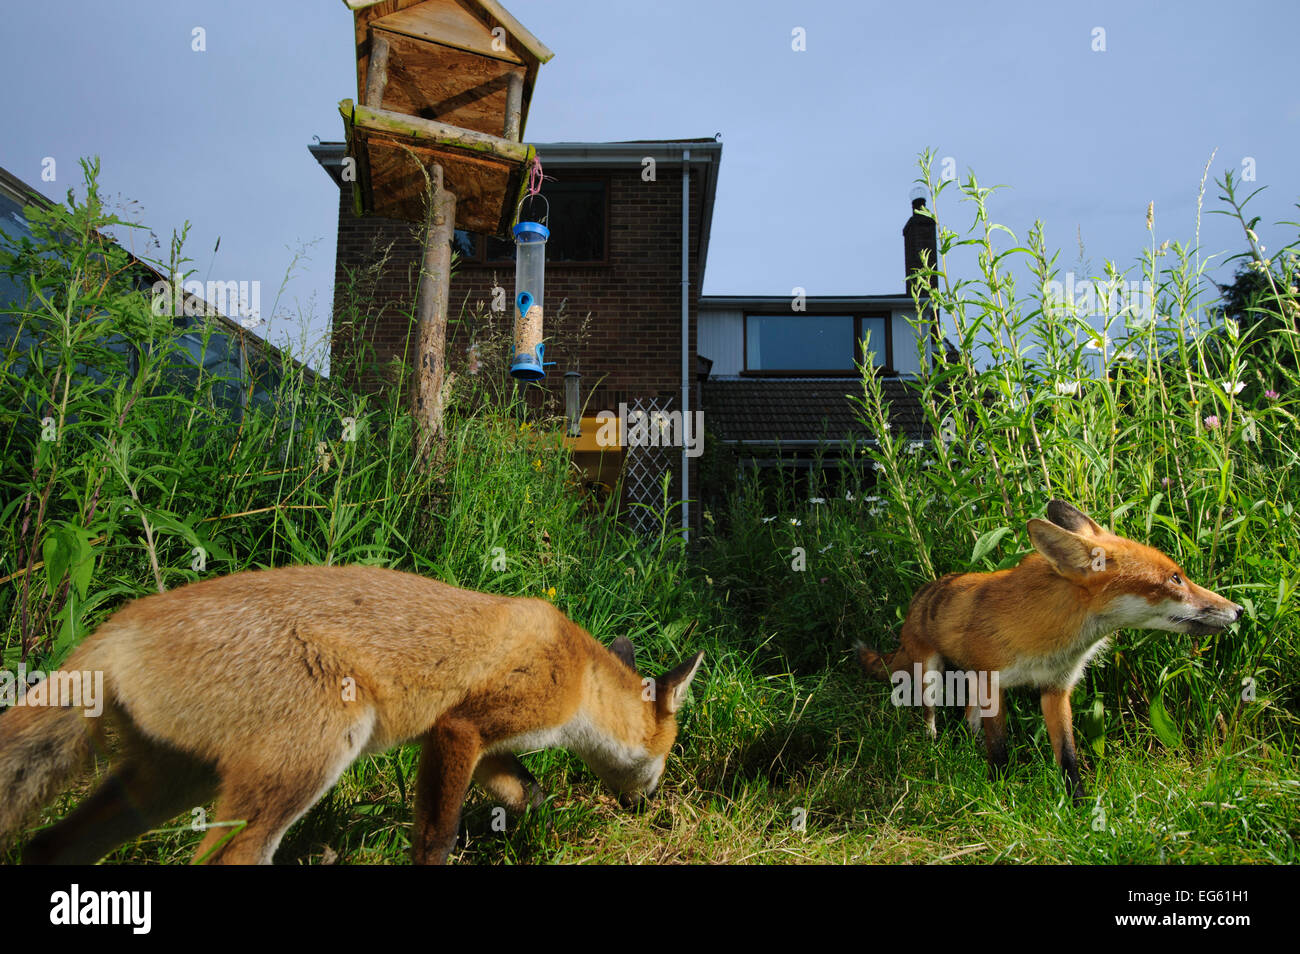 Los zorros (Vulpes vulpes) forrajeando en casa de ciudad jardín para widlife administrado. Vixen y cub. Kent, UK, en junio. Imagen de captura de la cámara. Liberados de la propiedad. Foto de stock